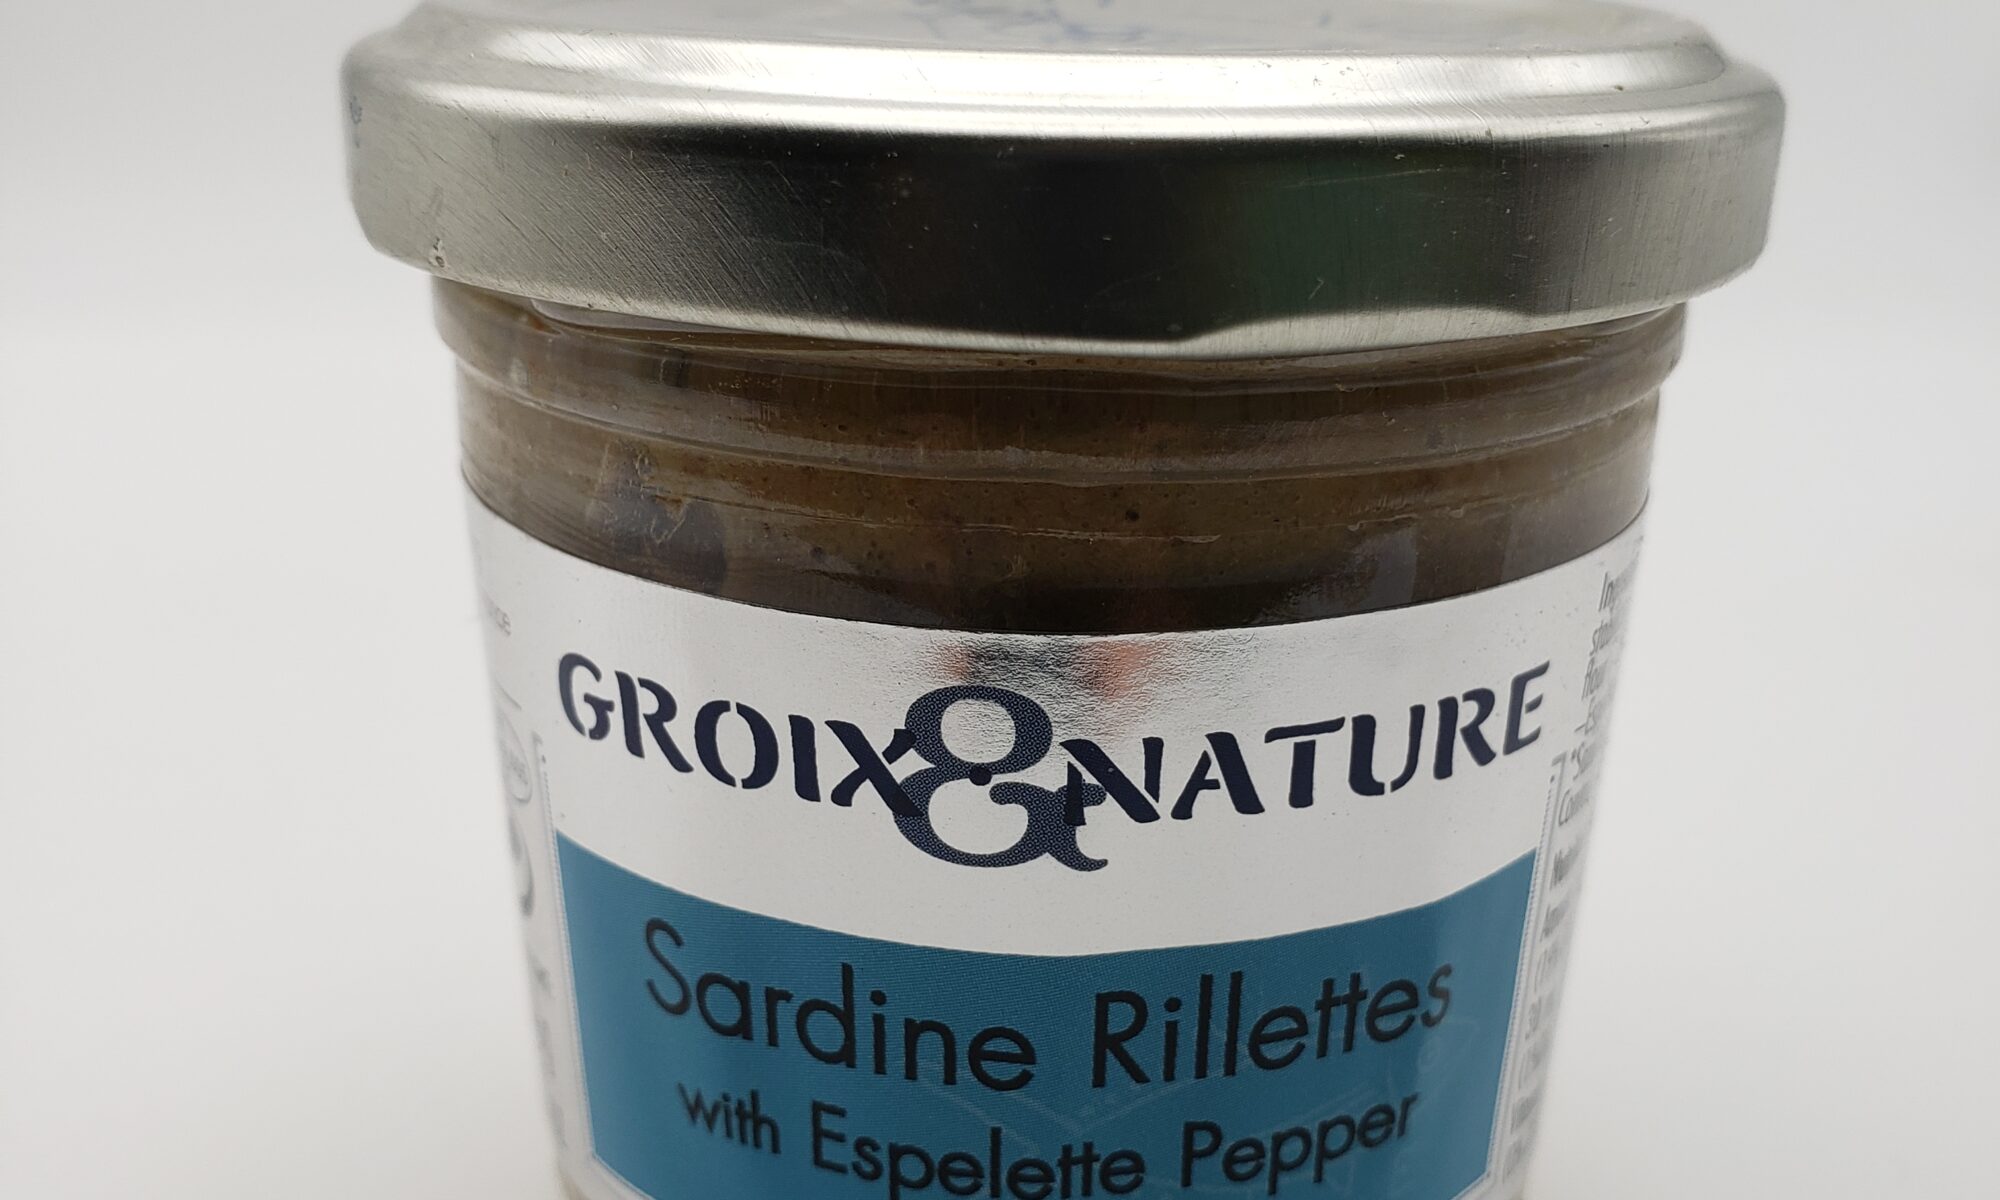 Image of Groix & Nature sardine rillettes